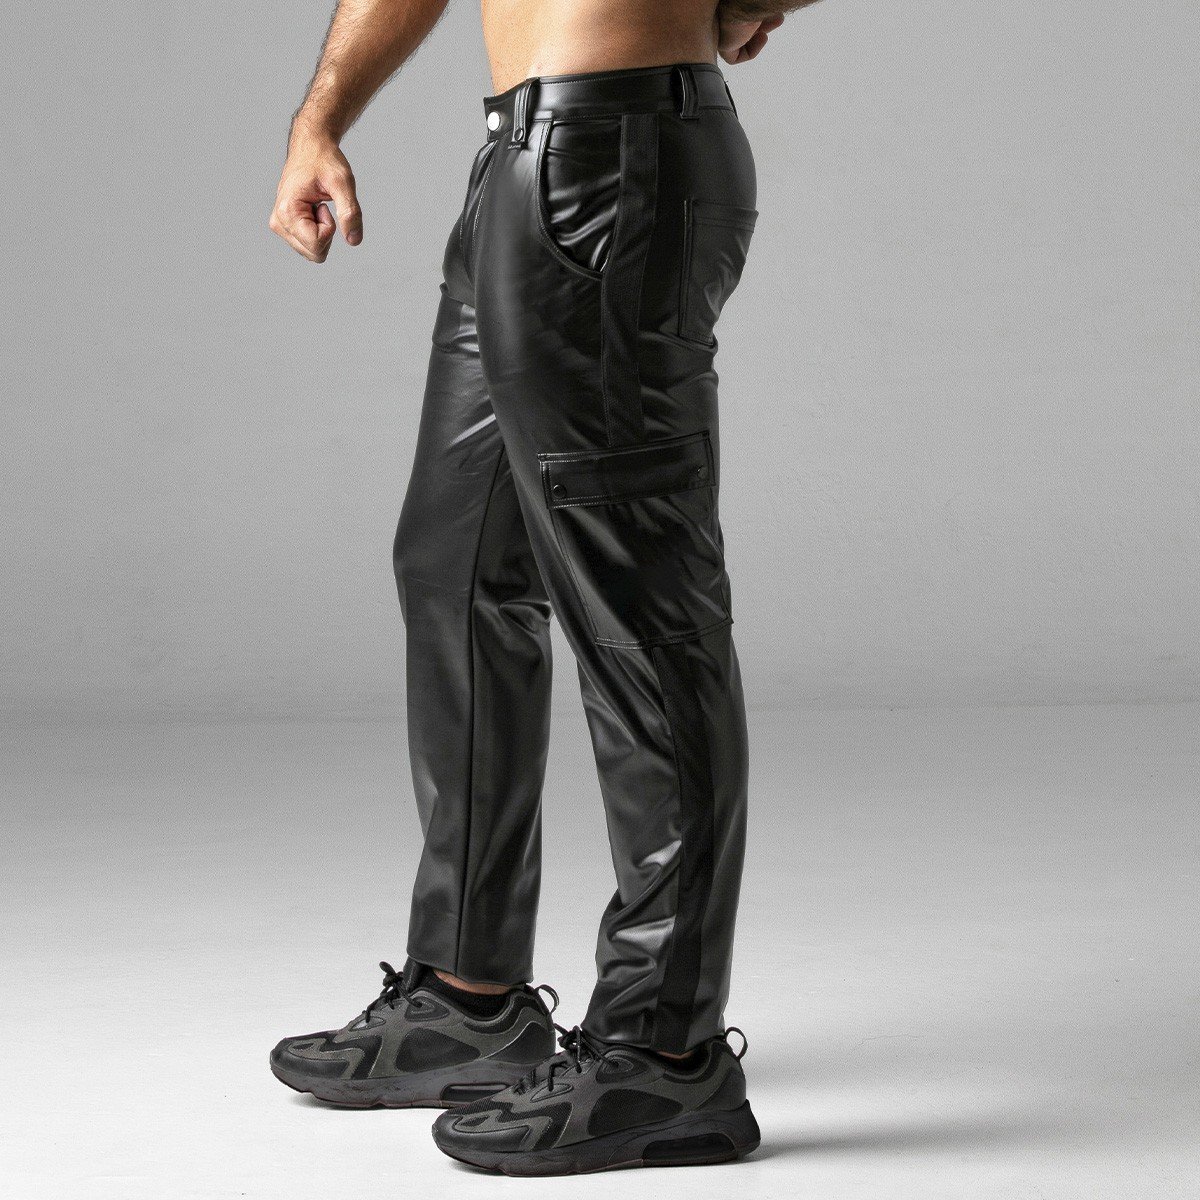 Kalhoty Locker Gear LK0965 Massive Rude Pant černé XXL, pánské kalhoty se zipem vzadu